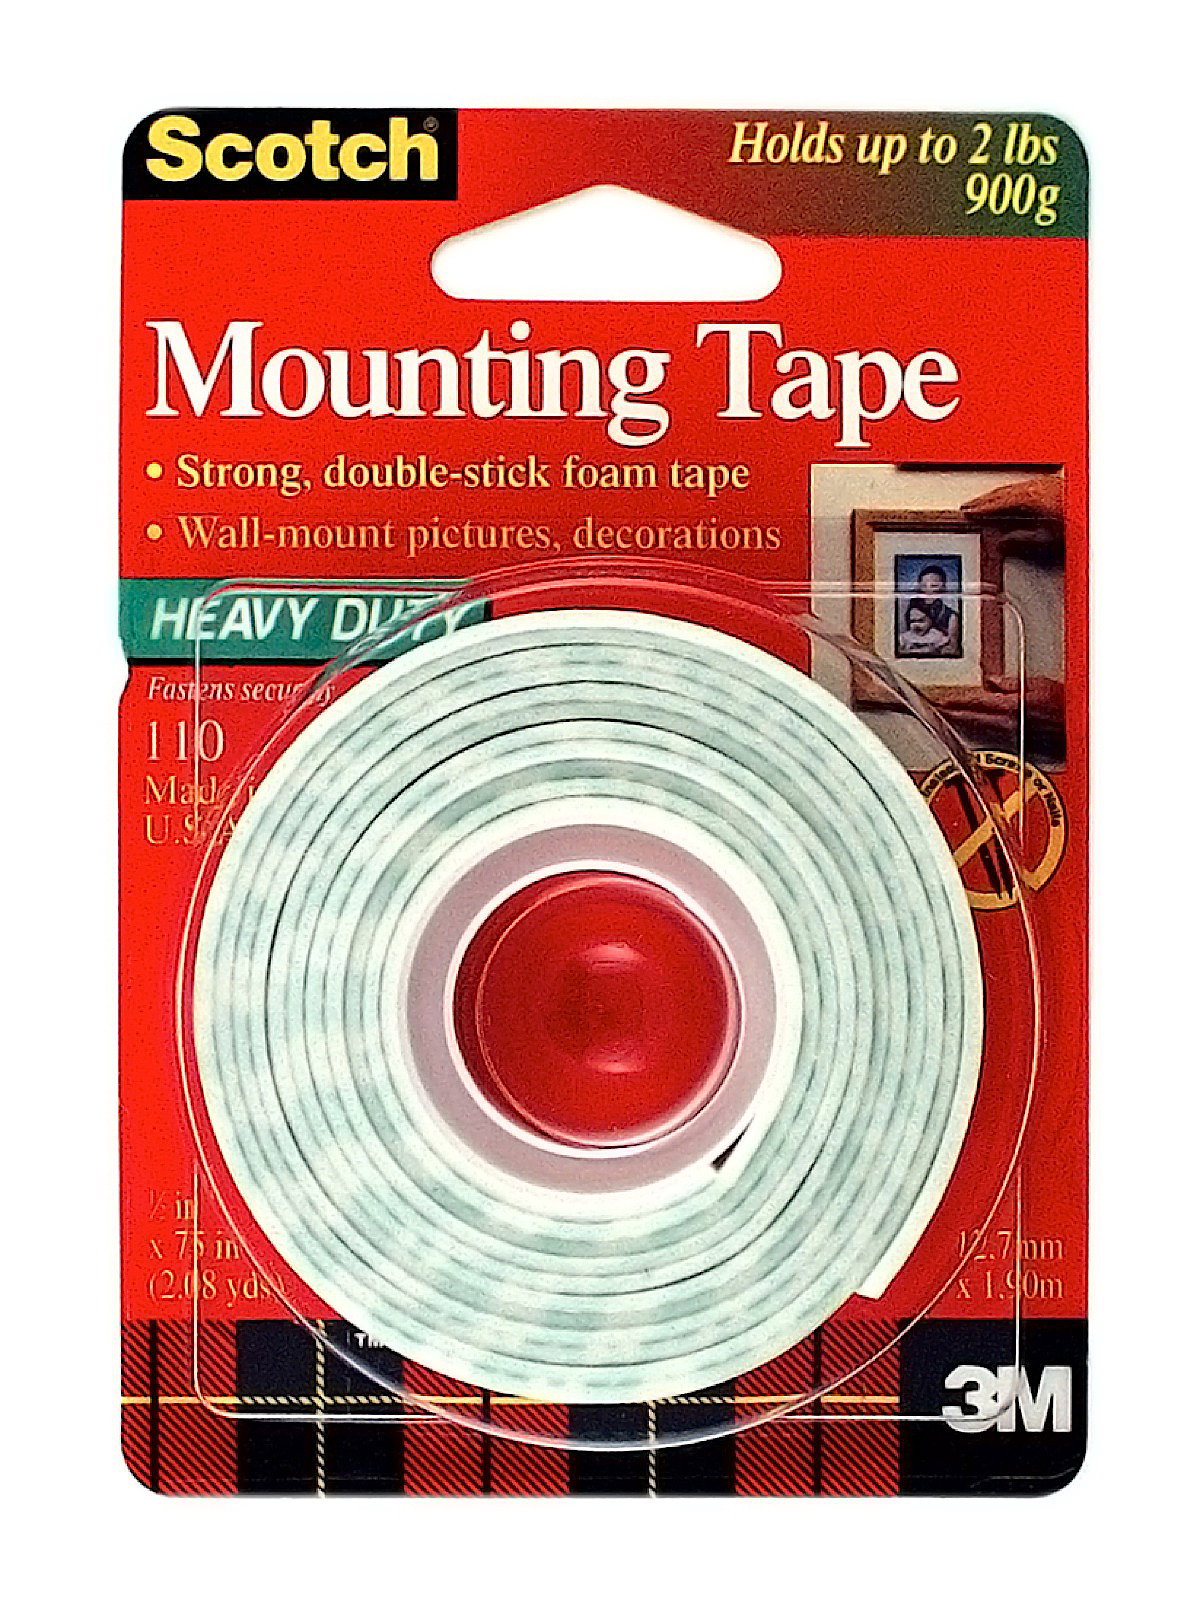 3M Scotch Mounting Tape 110 - 1/2 x 75